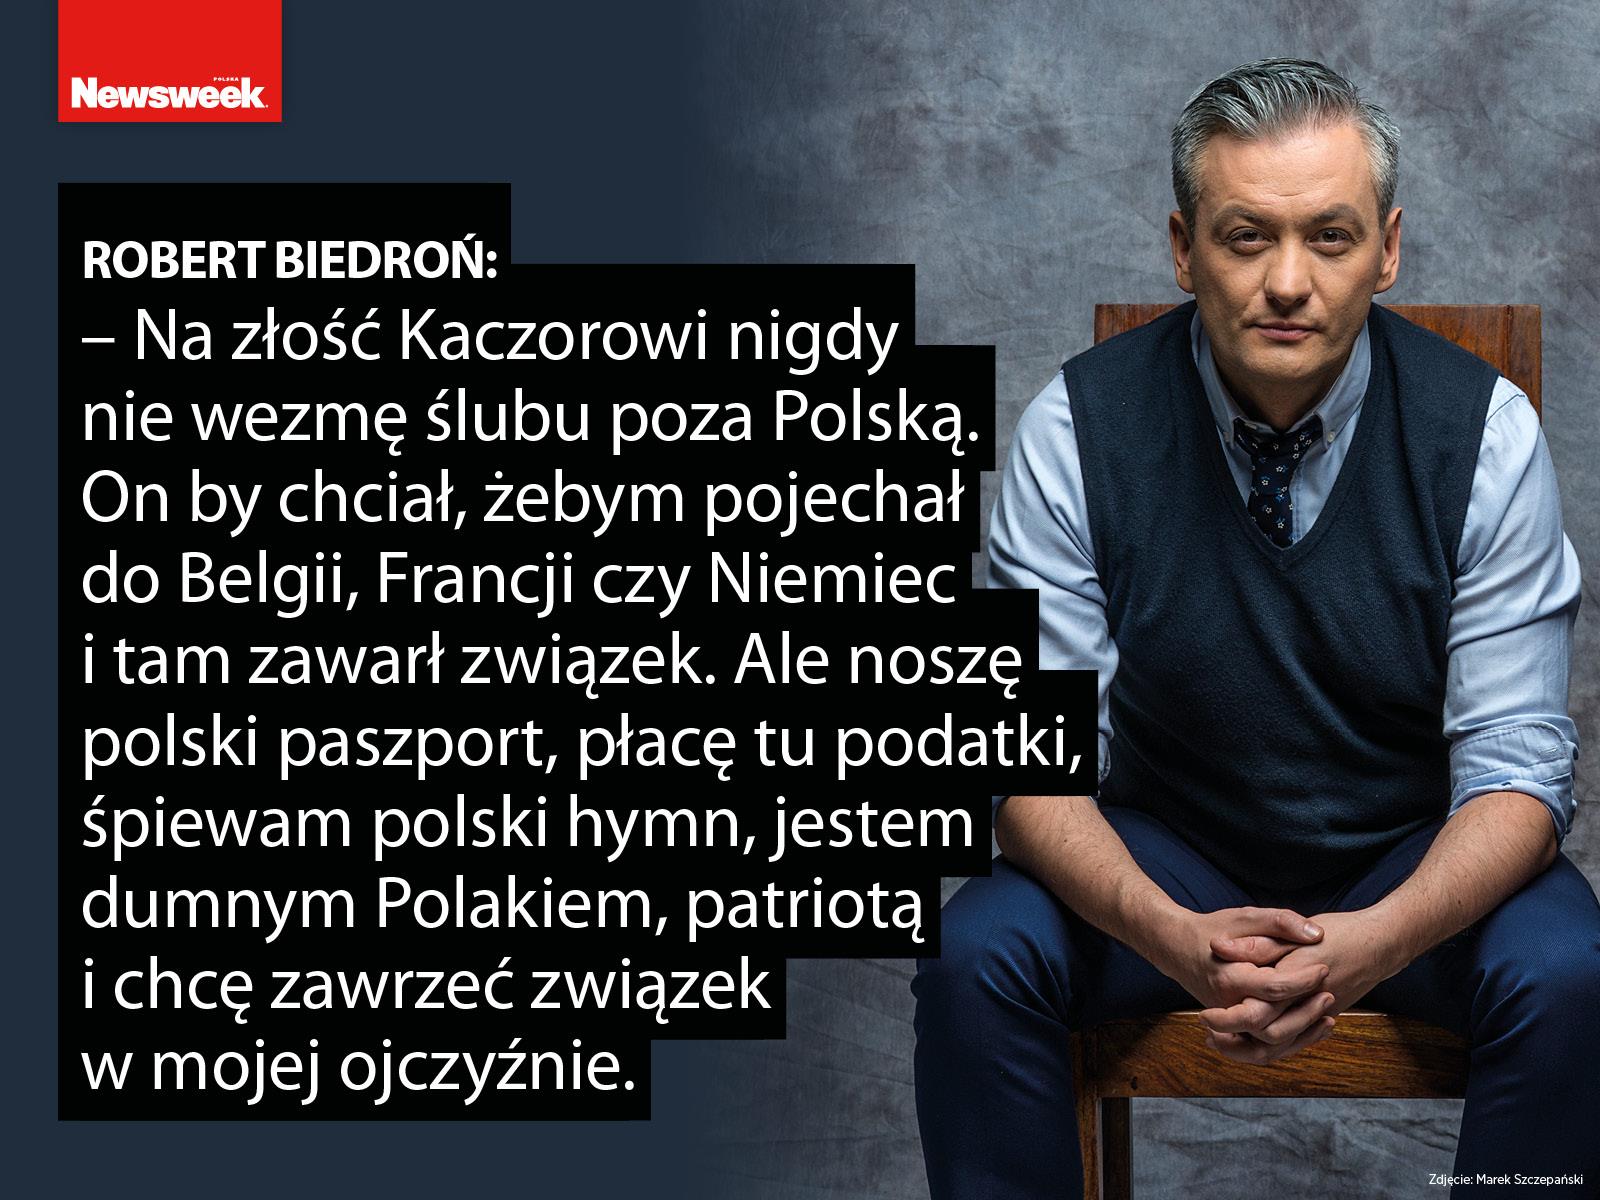 Robert Biedroń i  Krzysztofa Śmiszek cytaty 